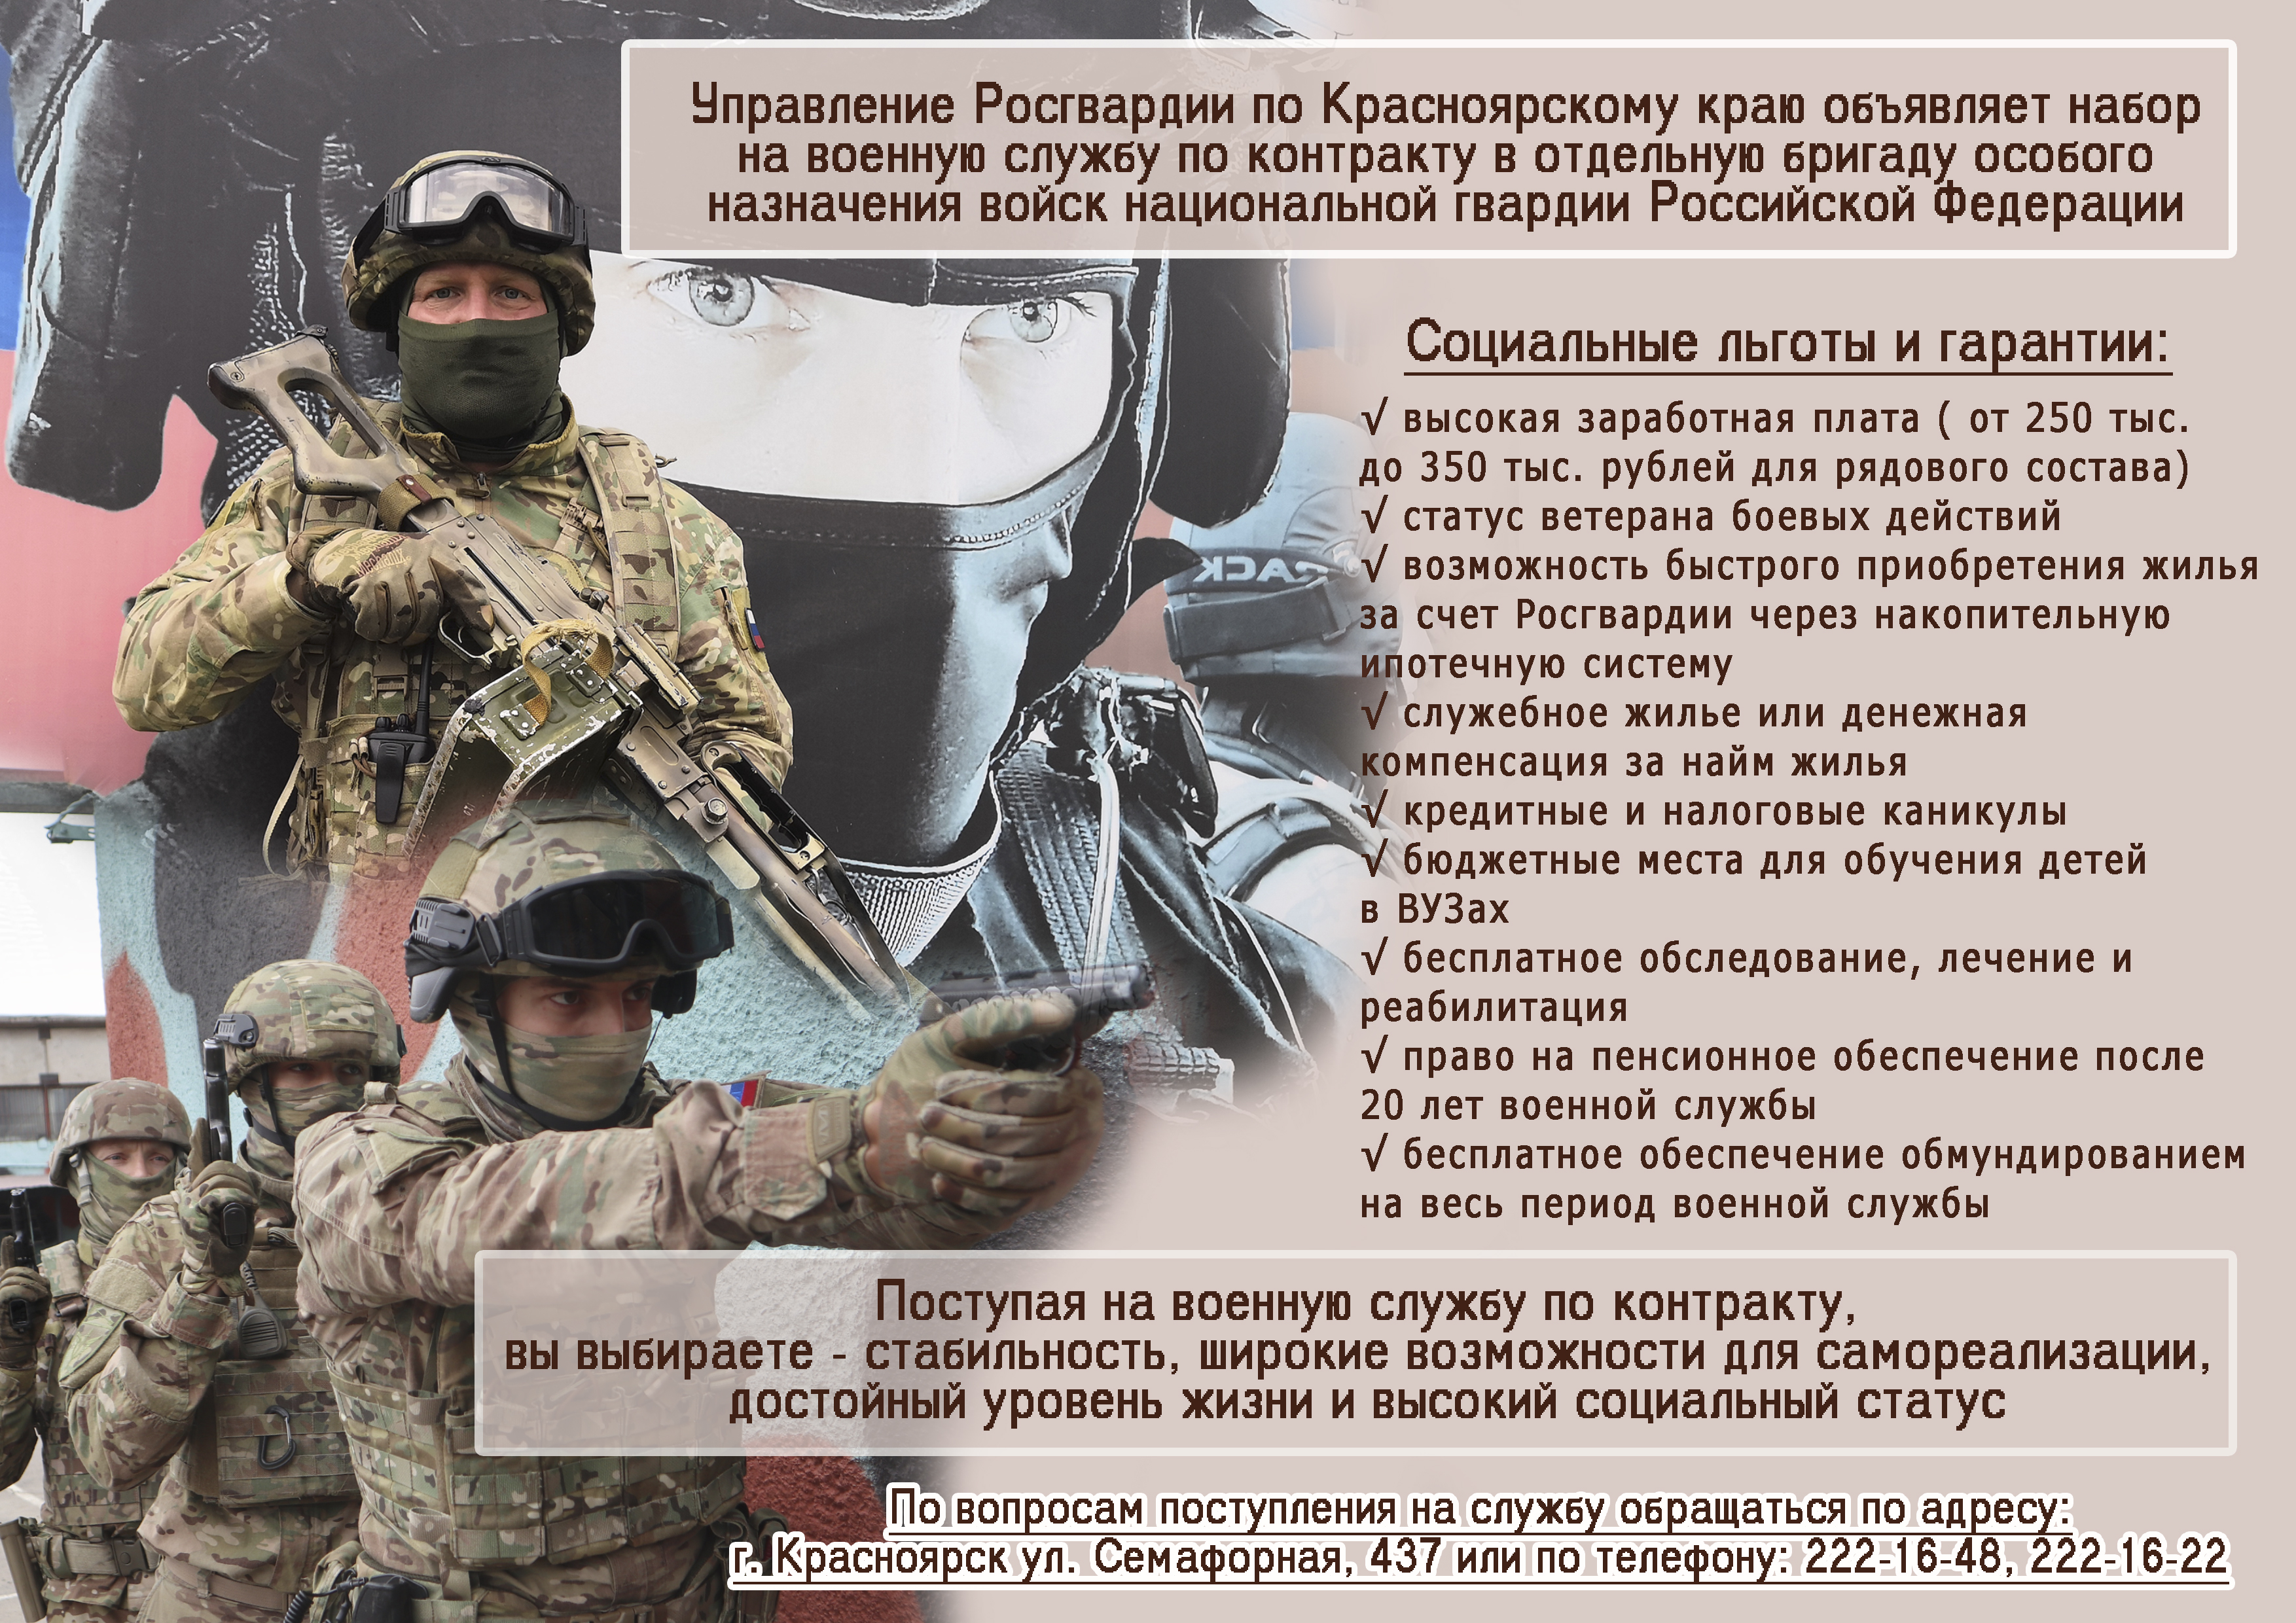 Управление Росгвардии по Красноярскому краю объявляет набор на военную службу по контракту в отдельную бригаду особого назначения войск национальной гвардии РФ.